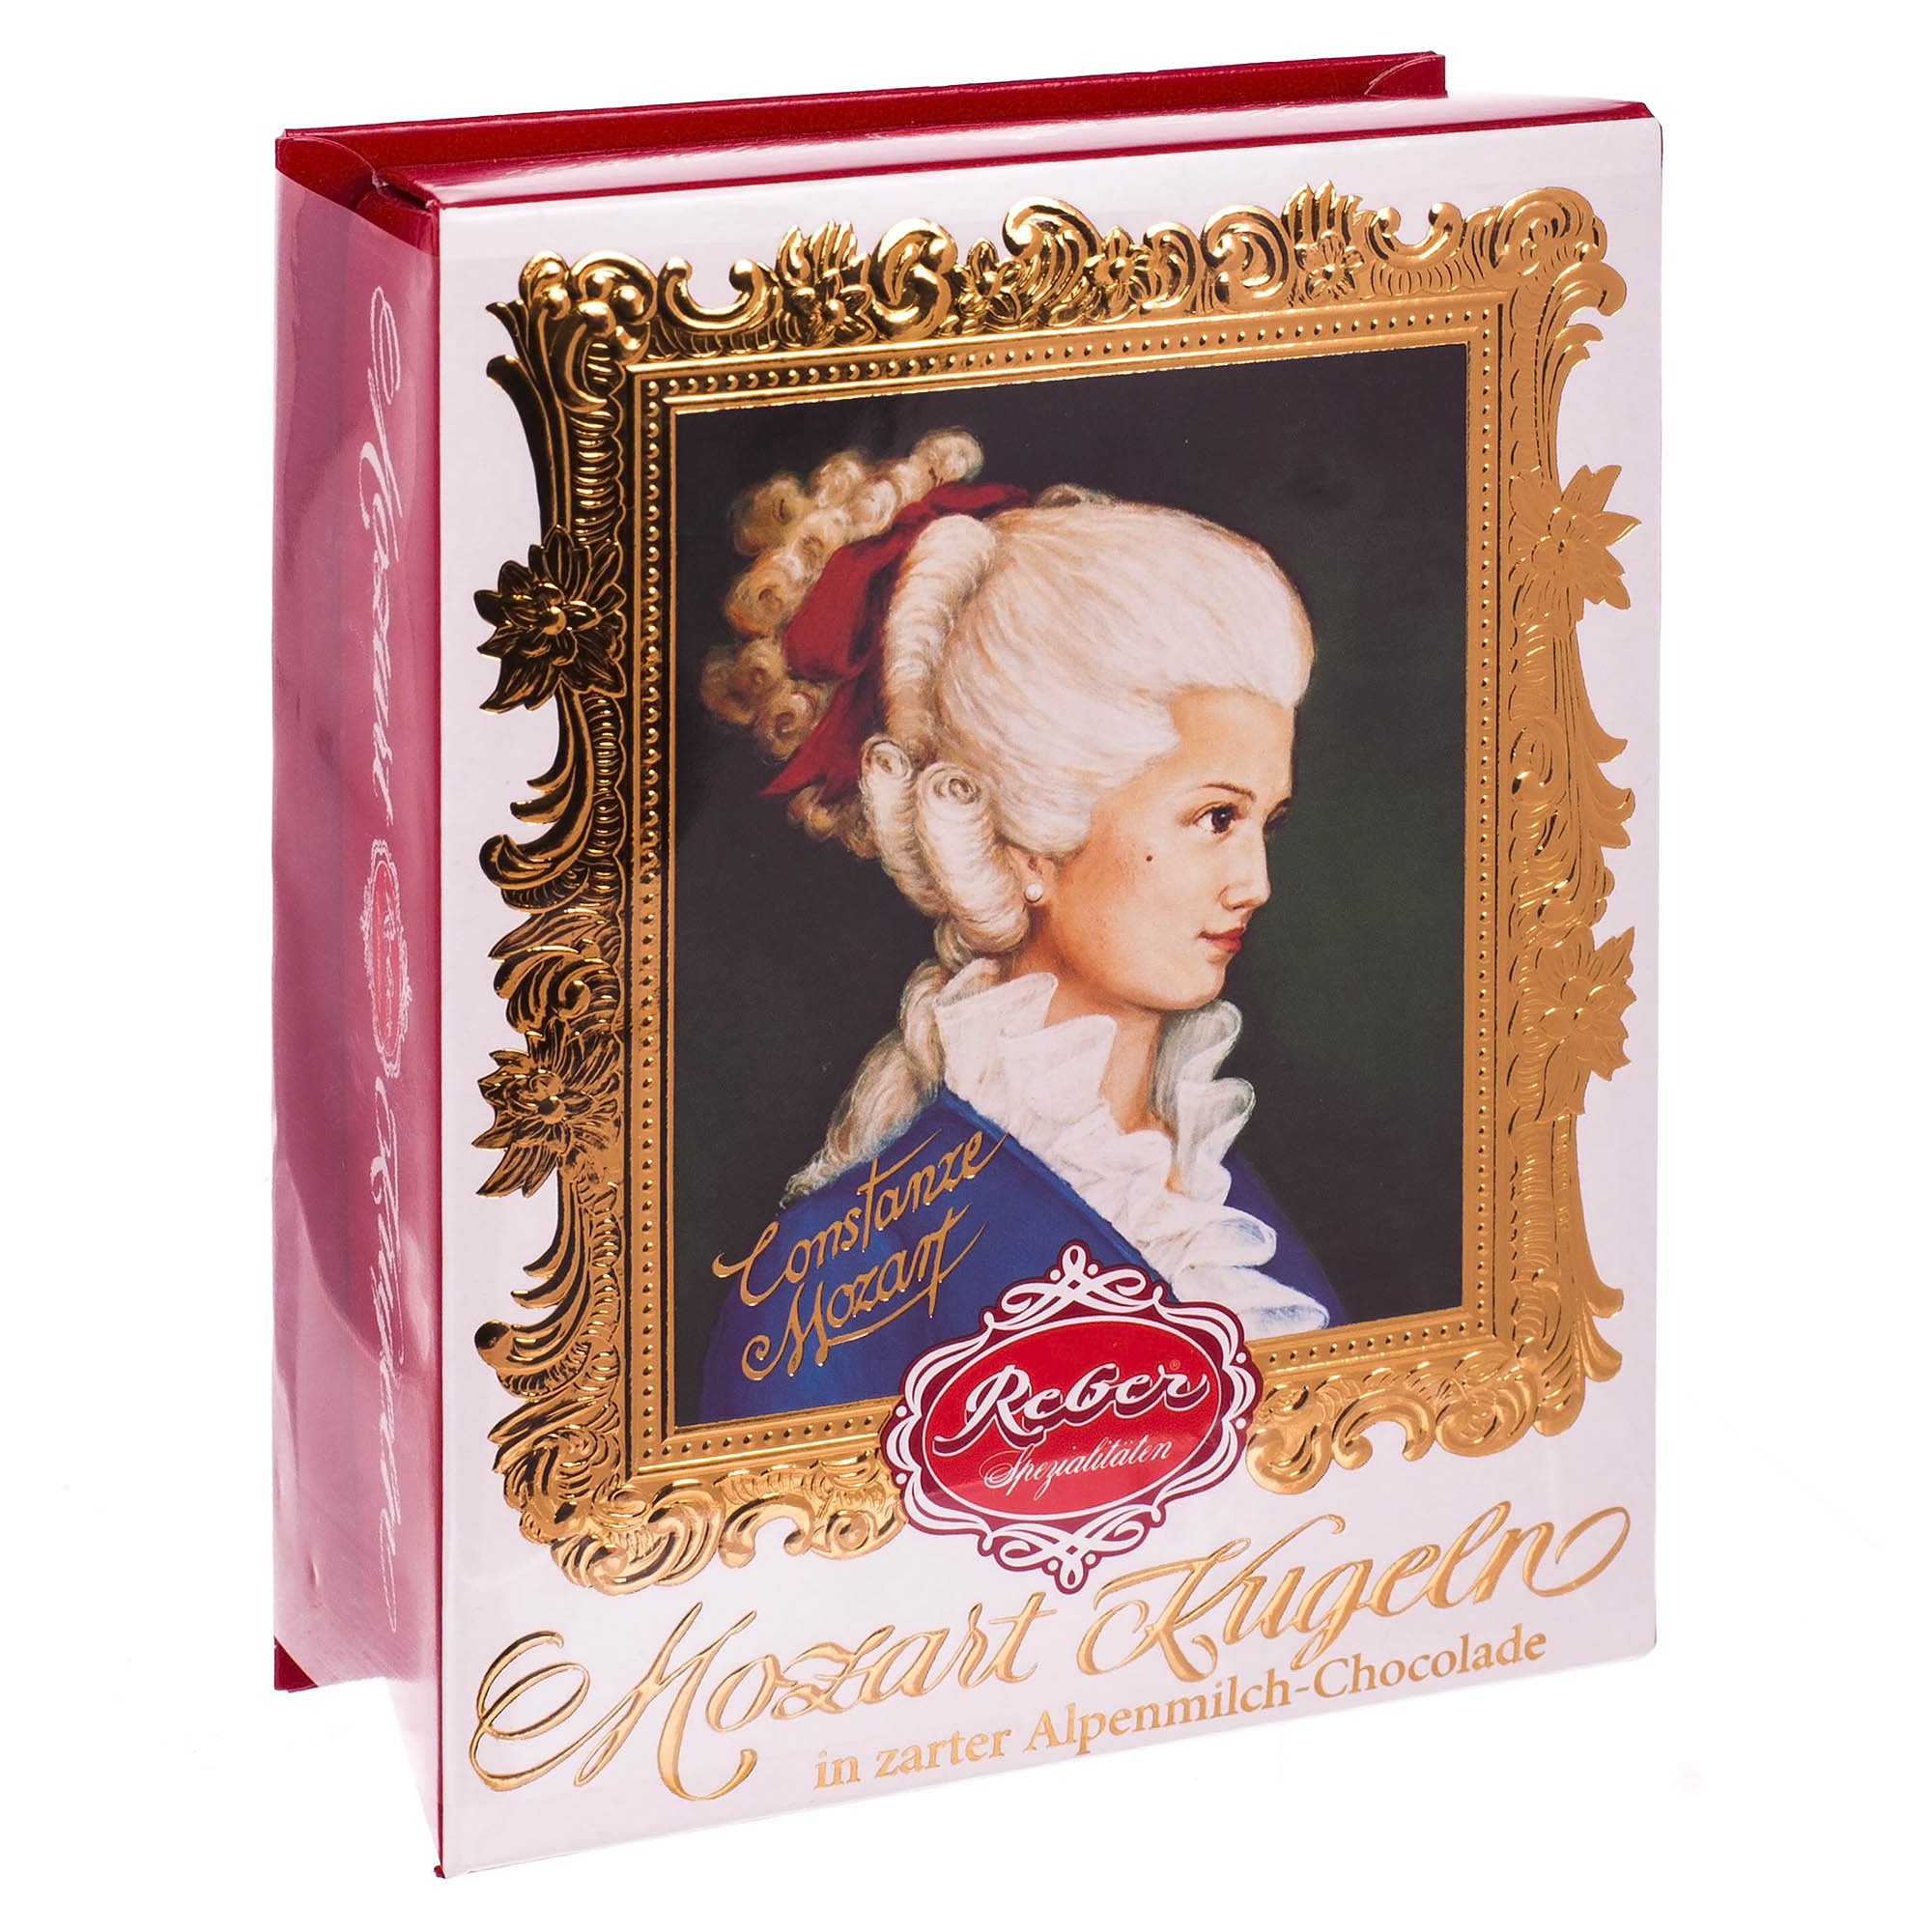 Mozart Kugel Reber подарочный набор с молочным шоколадом 120 г (1410111/5) набор выемок кондитерских для марципана и теста доляна 5 шт 7 8×4 6×1 см